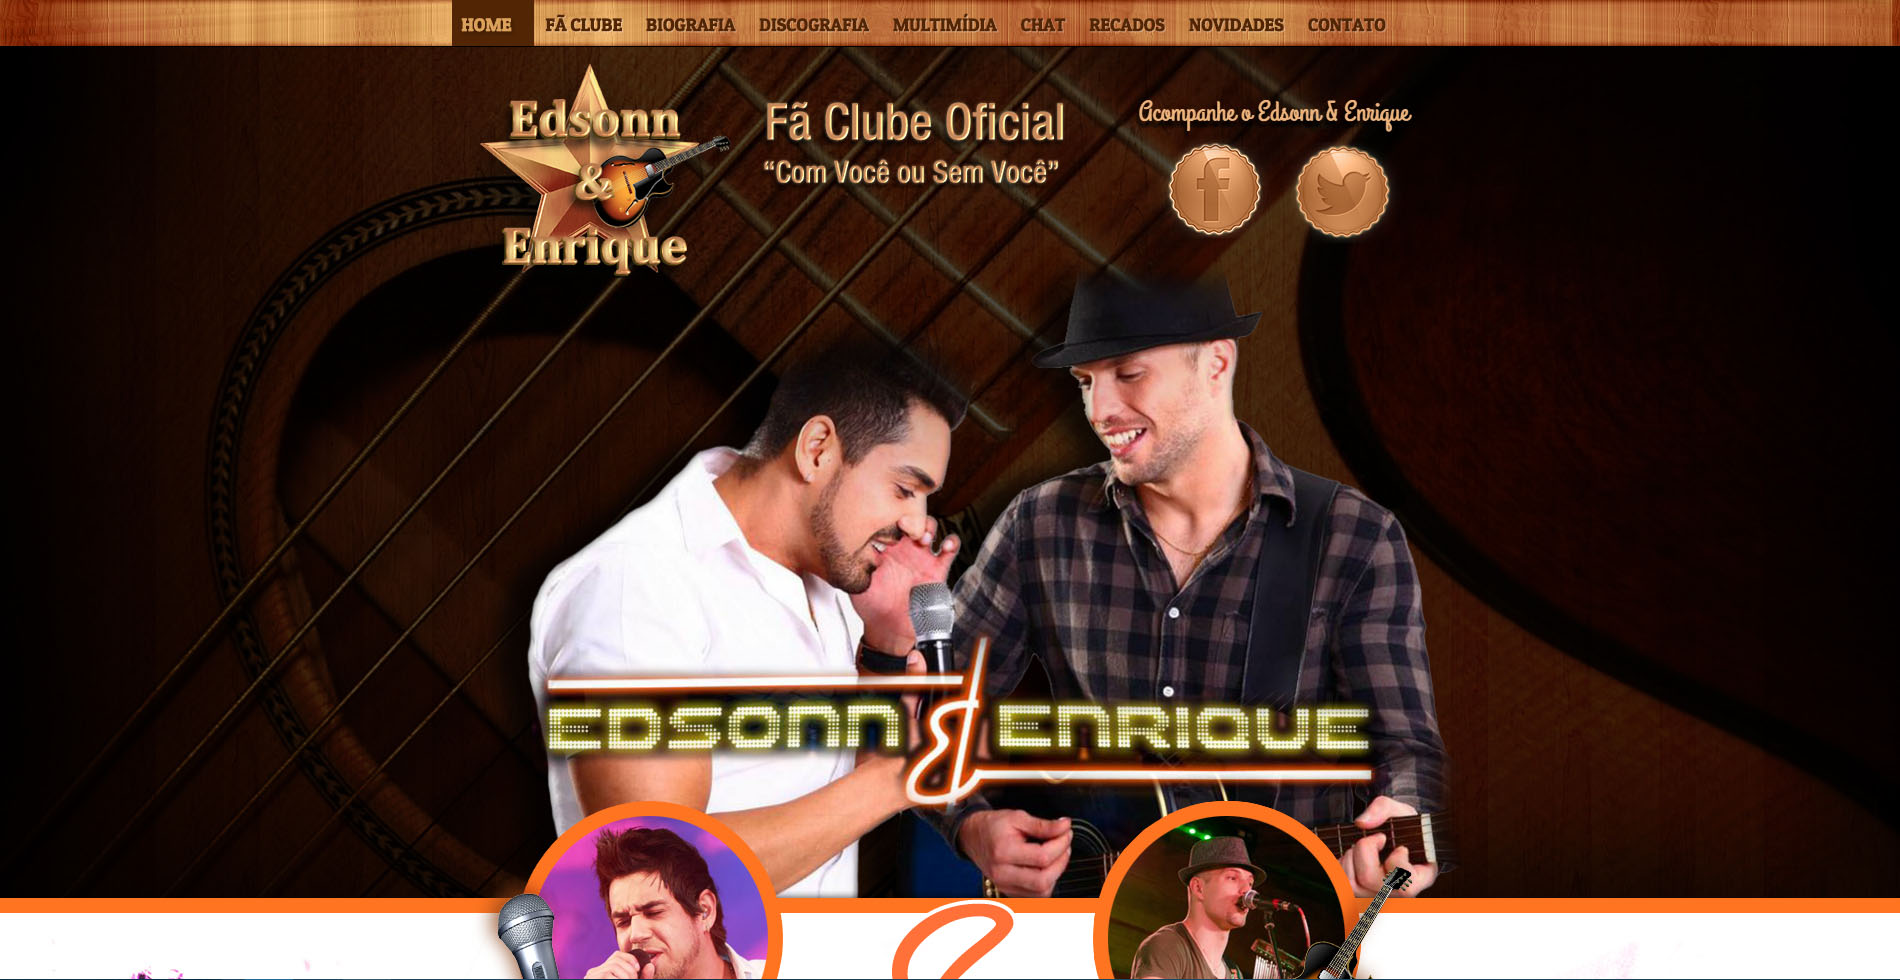 Edsonn e Enrique